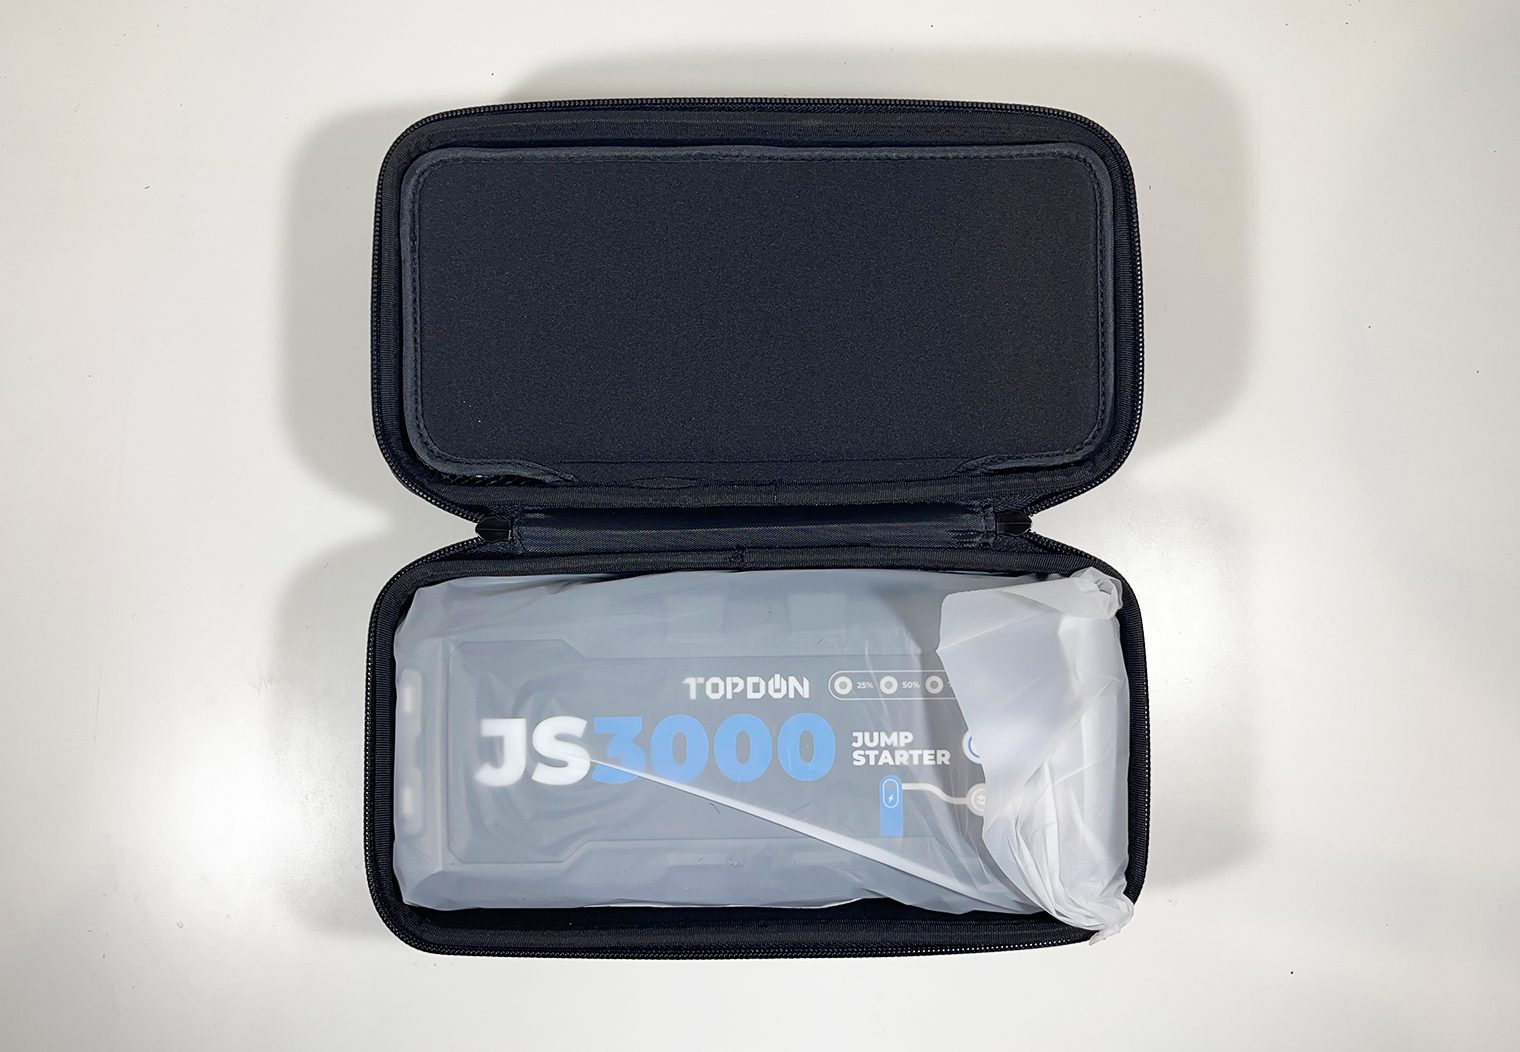 TOPDON JS3000 unboxing